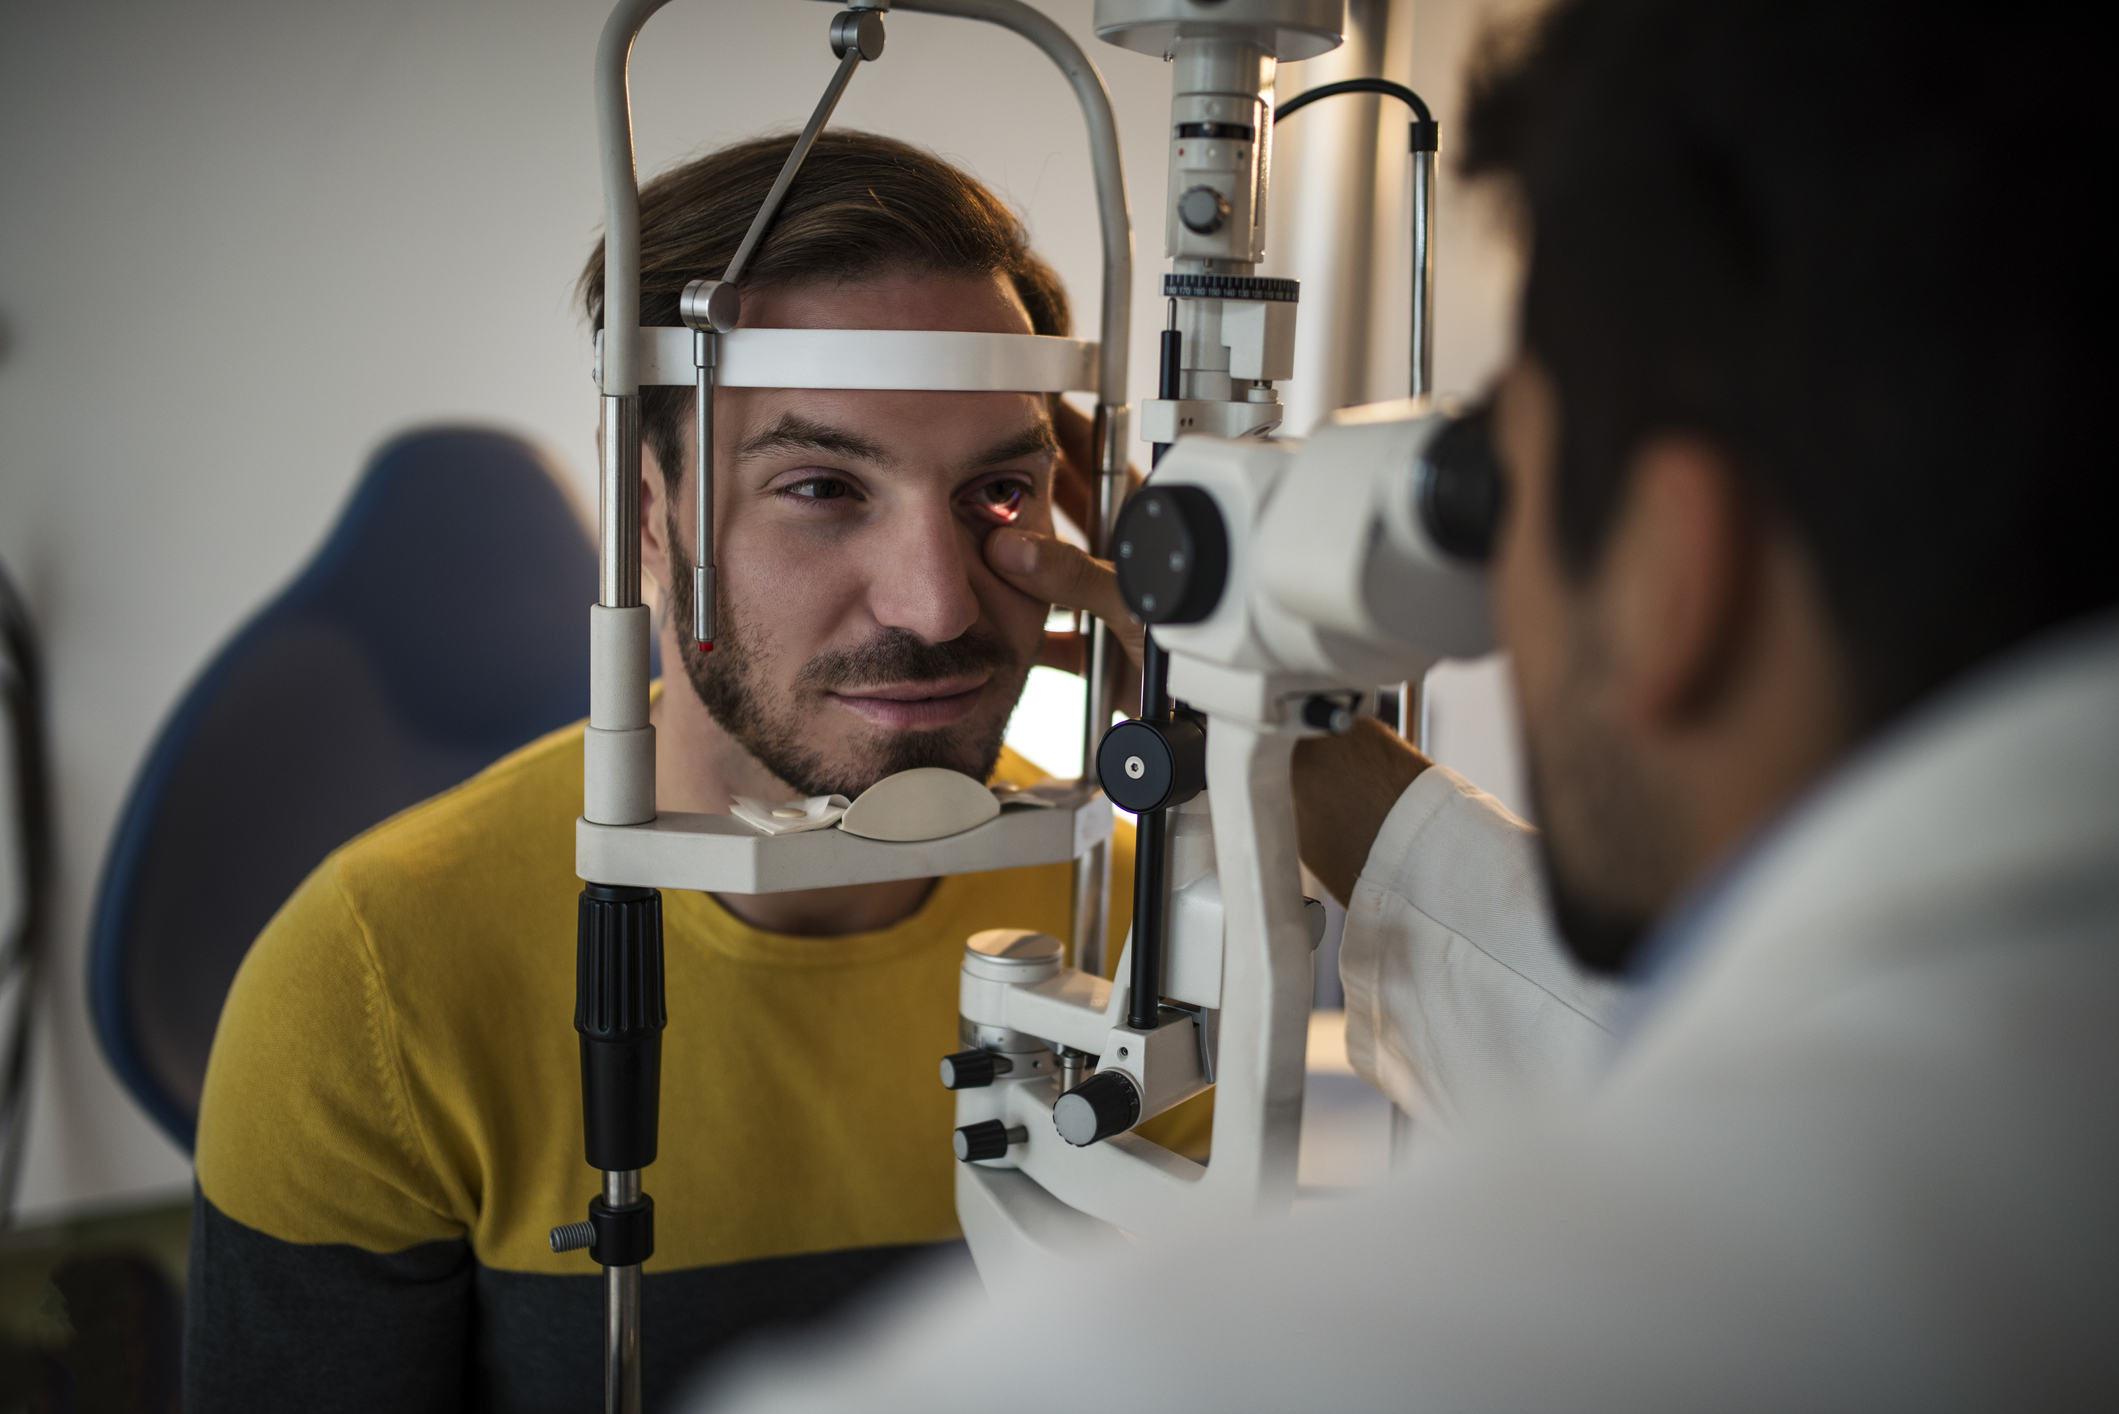 A man receiving an eye exam from a doctor.